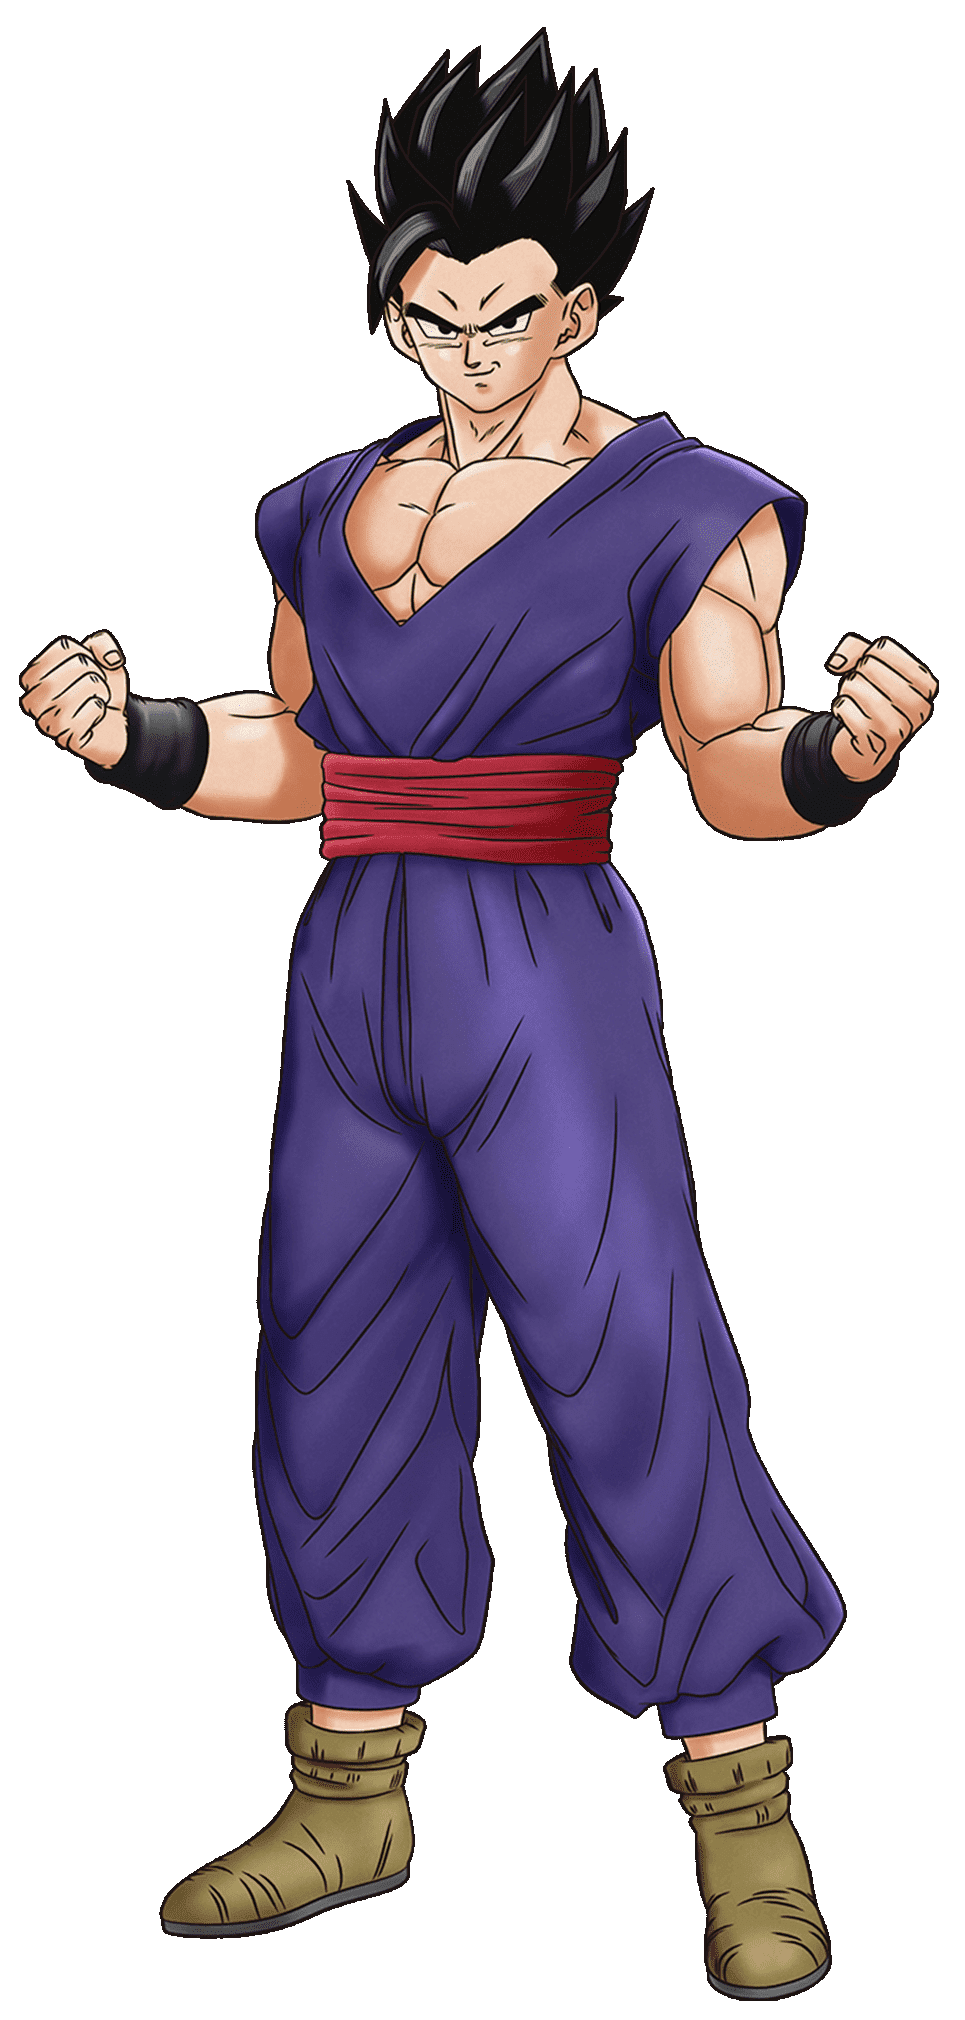 Déguisement Piccolo Dragon Ball Z homme - Magie du déguisement - Manga Héros